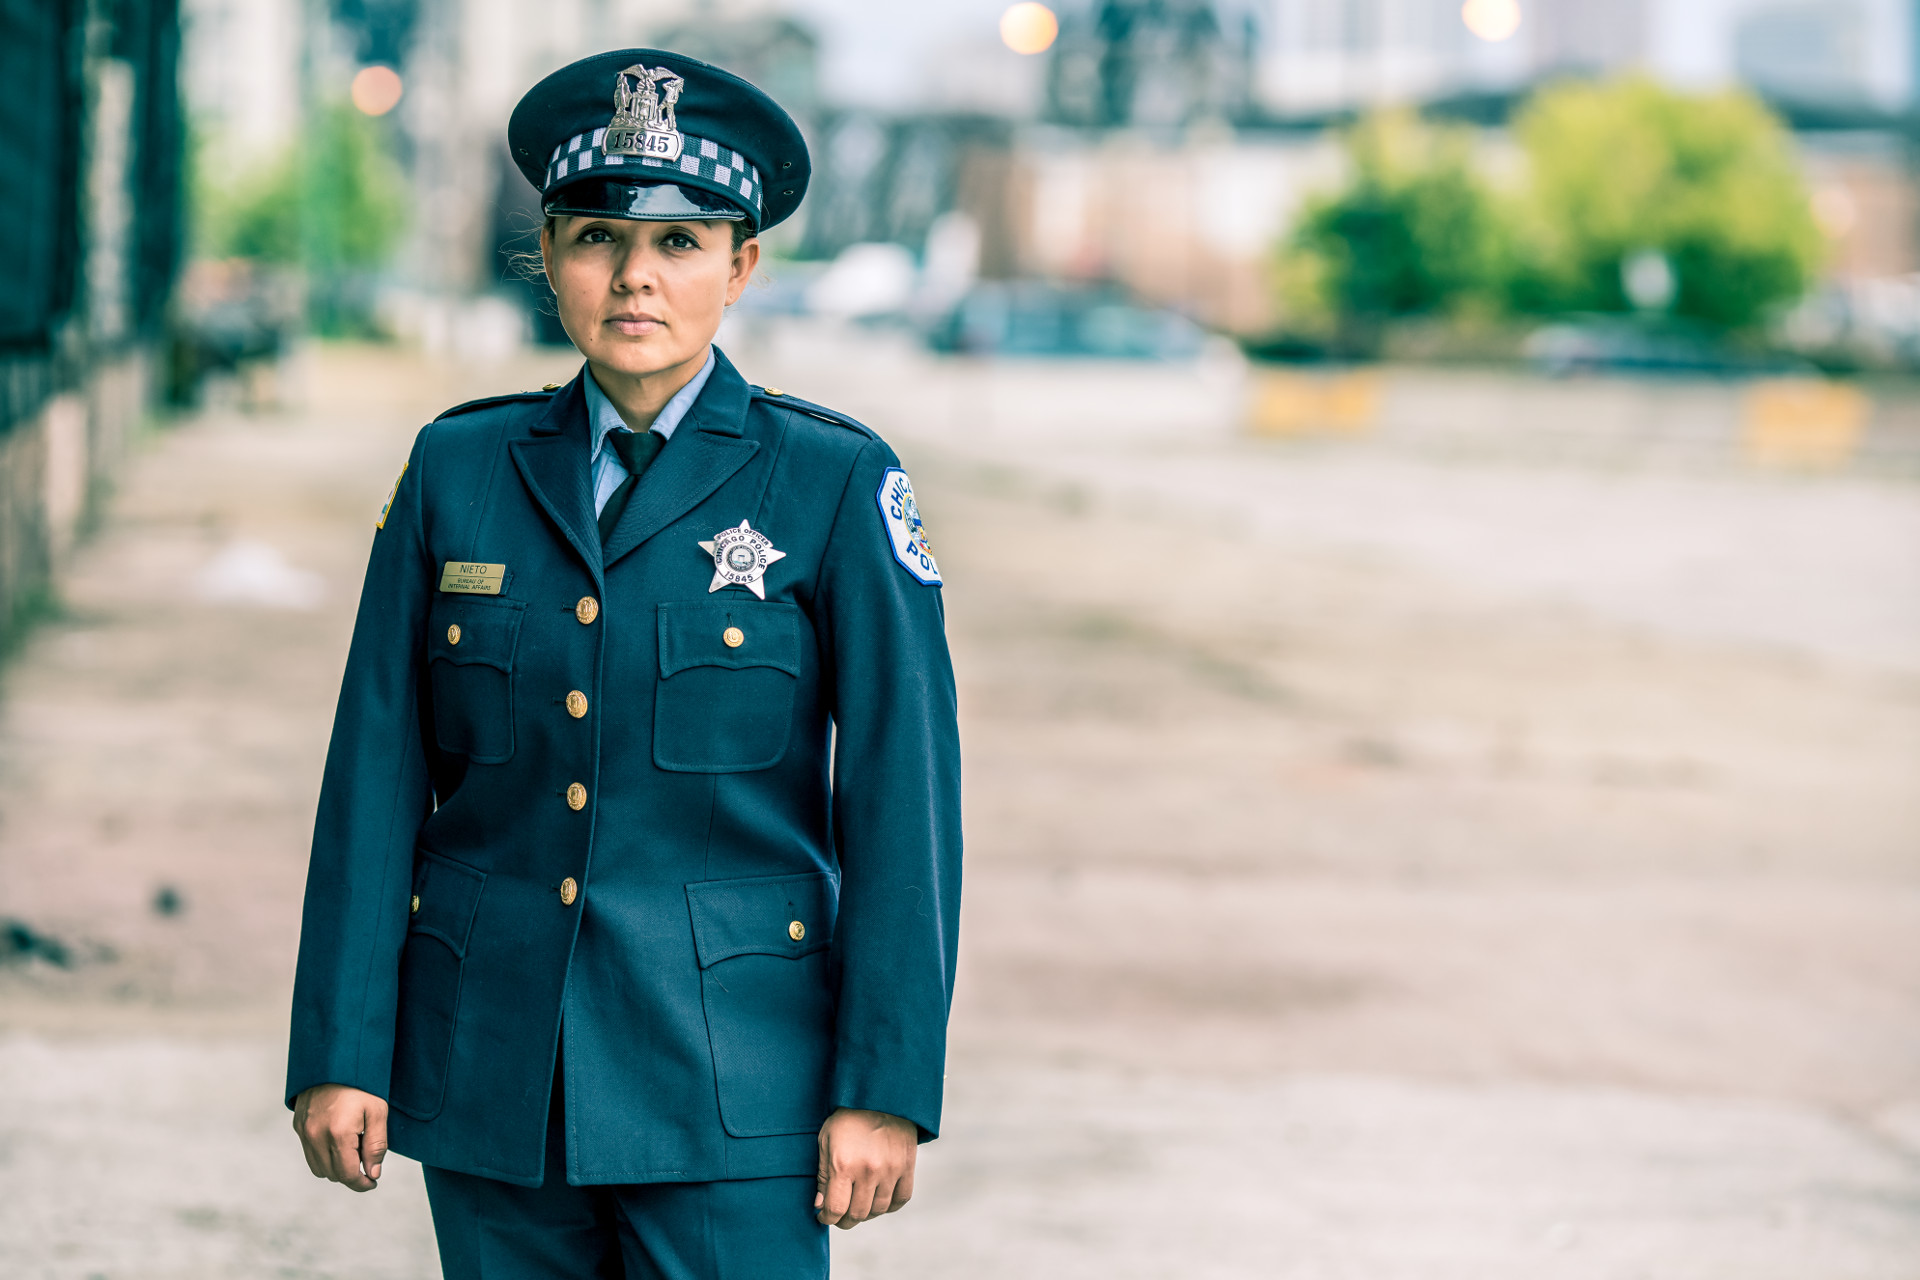 Officer Lourdes Nieto